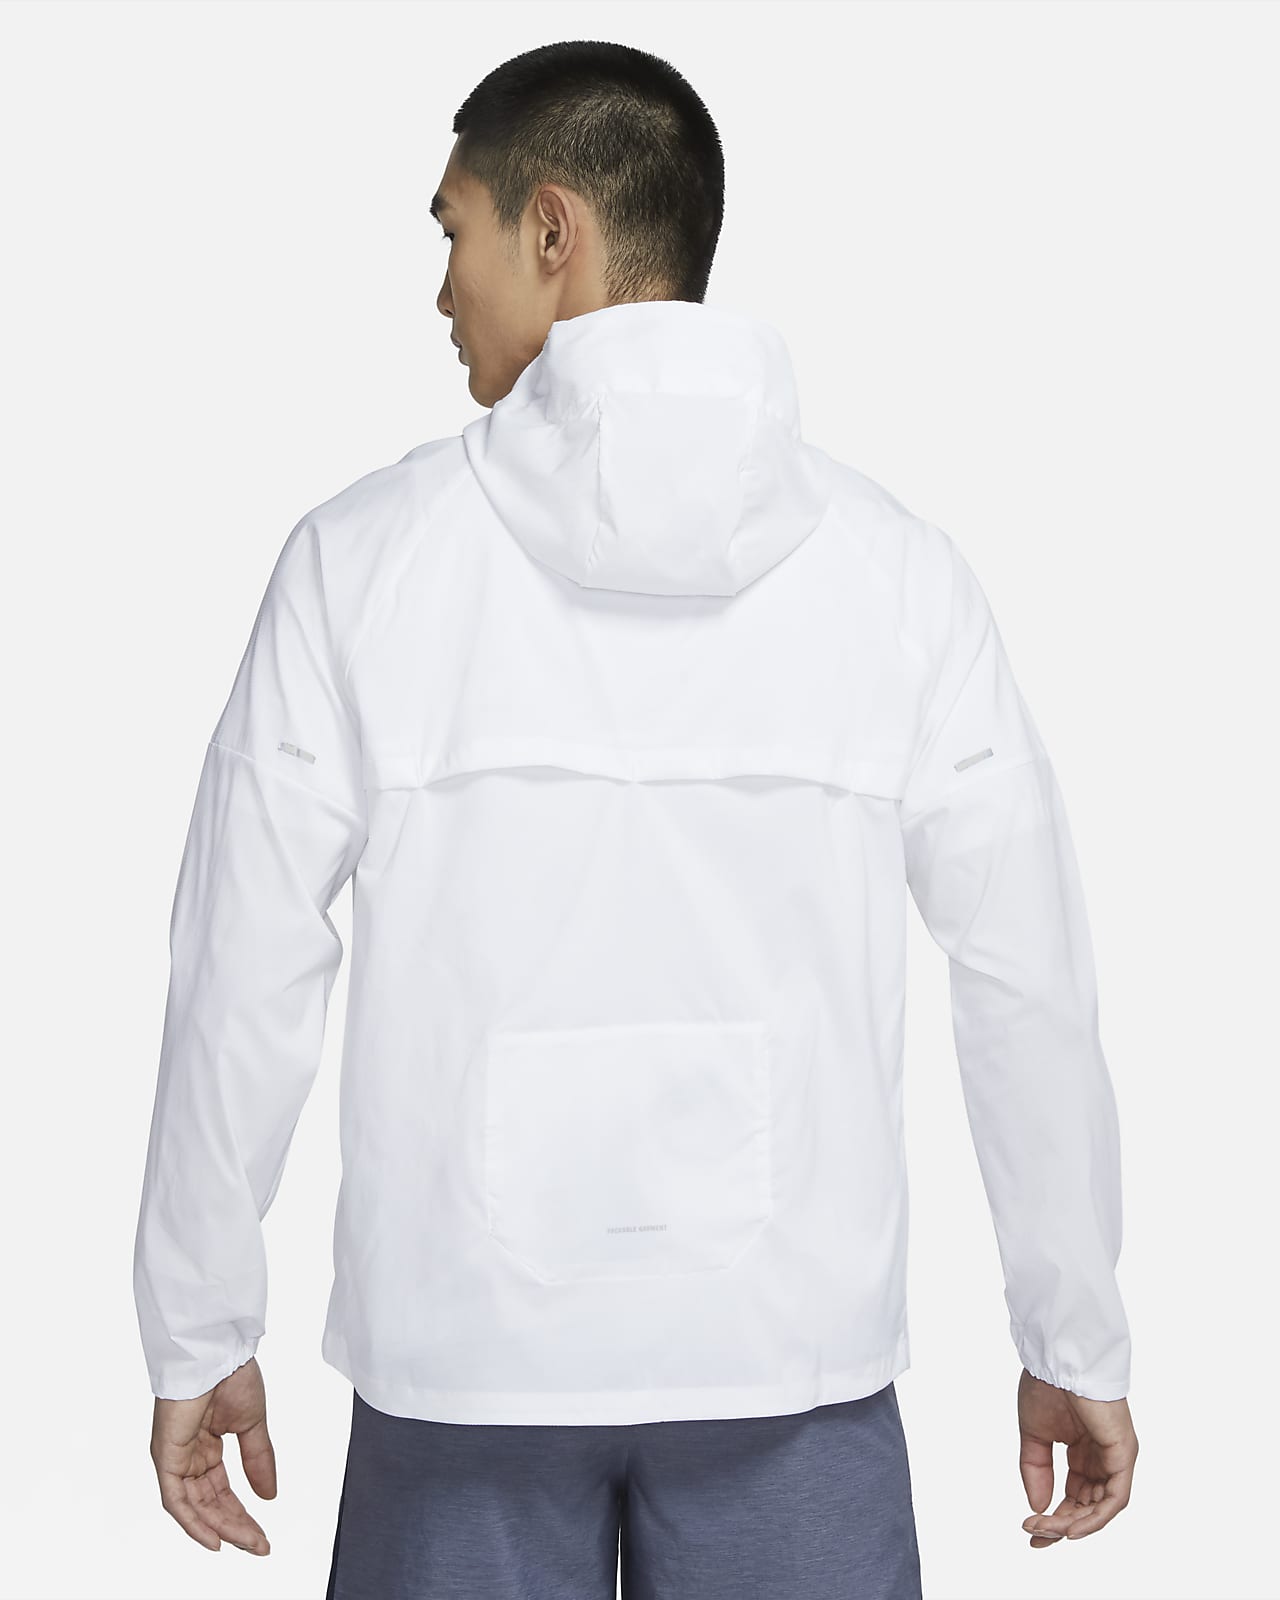 NIKE公式】ナイキ ウィンドランナー メンズ ランニングジャケット